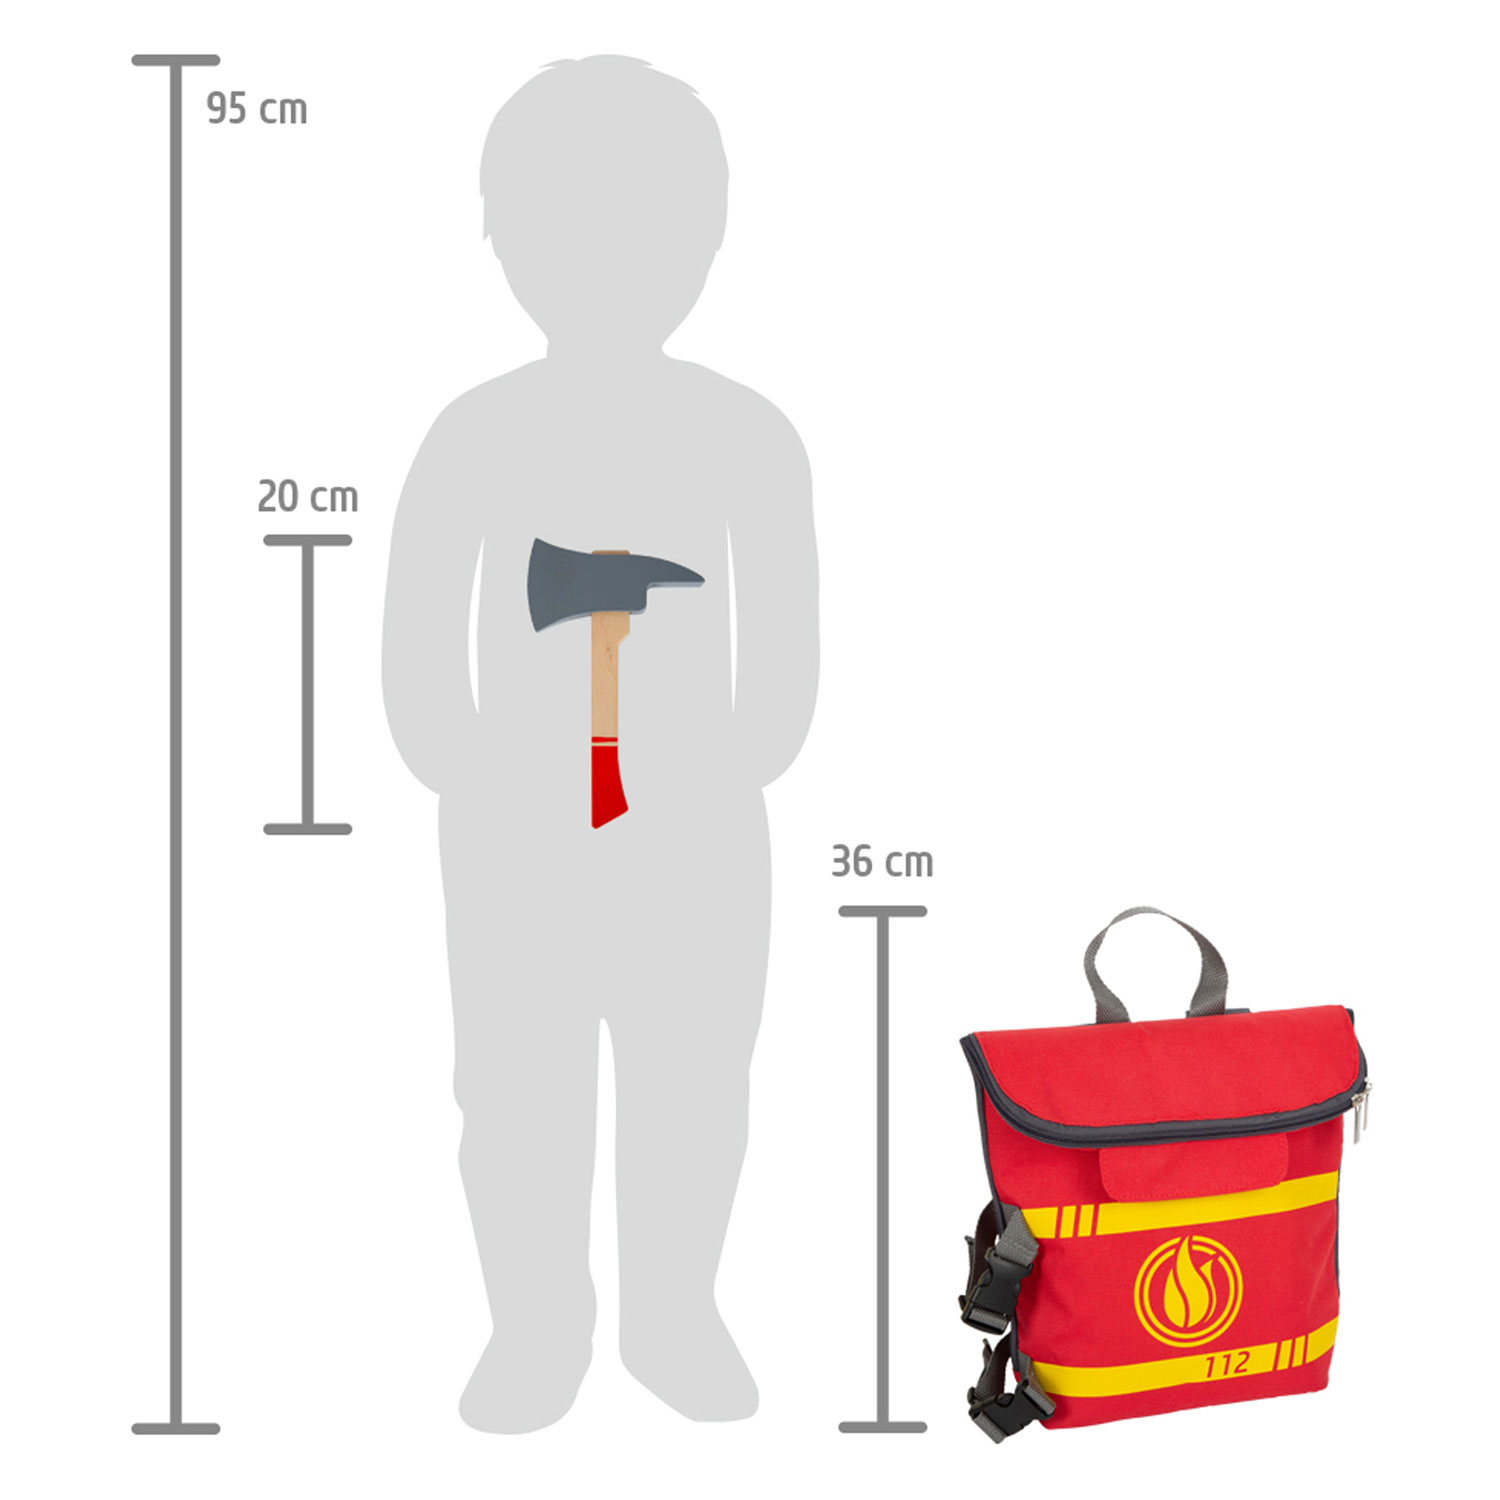 Small Foot - Feuerwehrrucksack mit Feuerwehr-Attributen aus Holz, 8dlg.